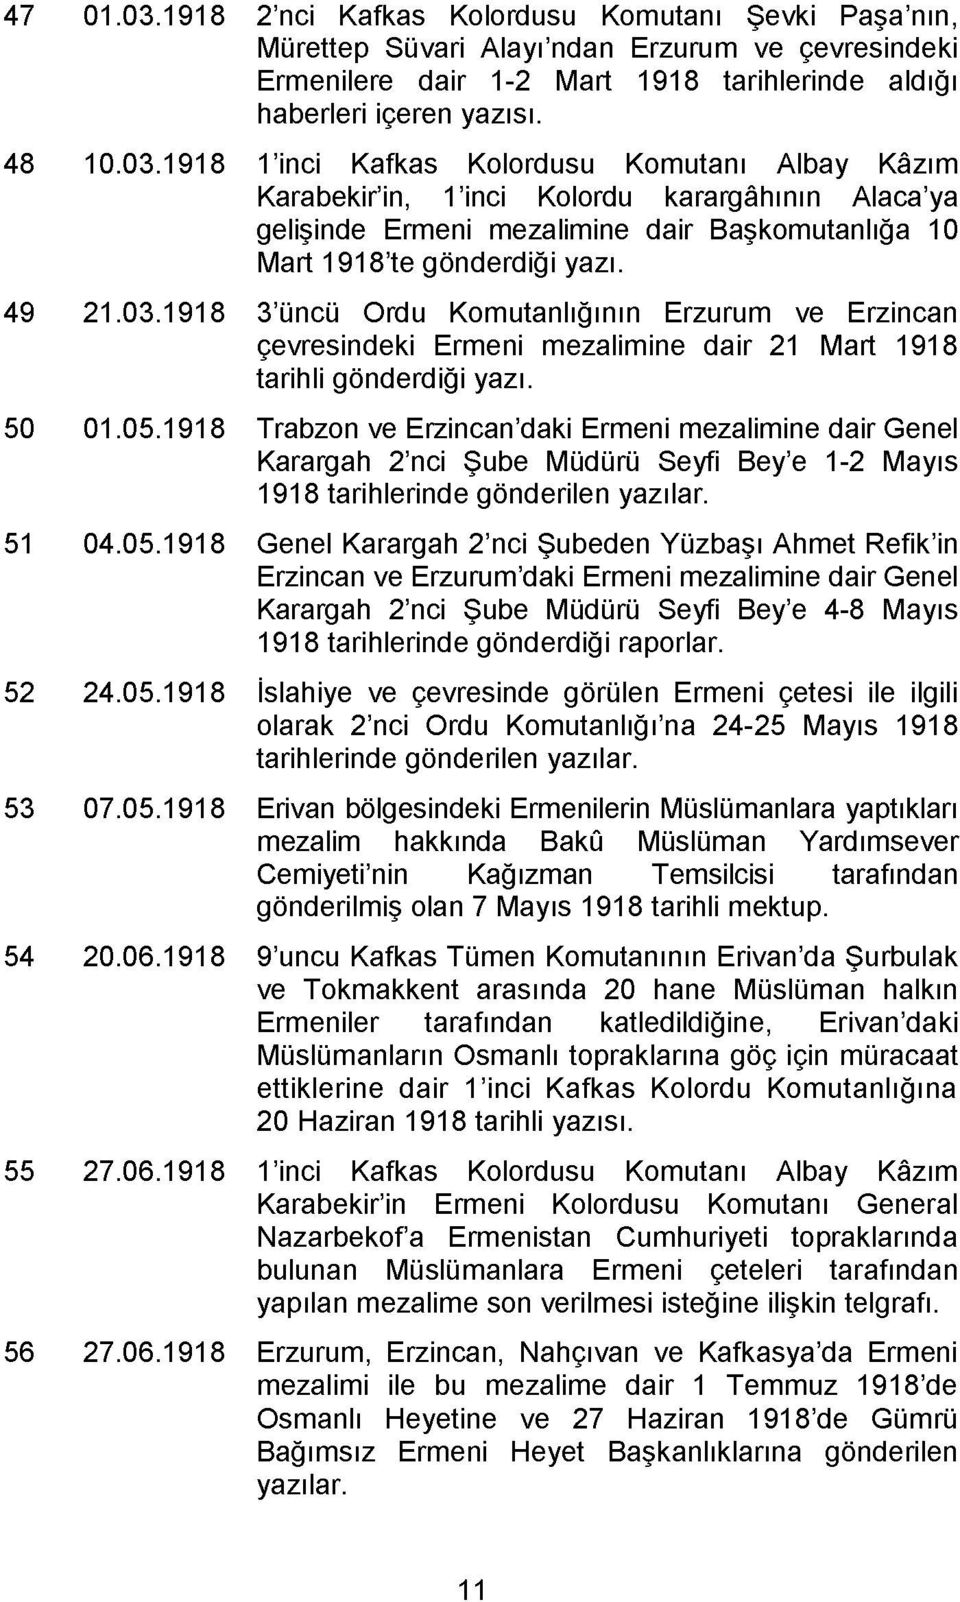 1 inci Kafkas Kolordusu Komutanı Albay Kâzım Karabekir in, 1 inci Kolordu karargâhının Alaca ya gelişinde Ermeni mezalimine dair Başkomutanlığa 10 Mart 1918 te gönderdiği yazı.